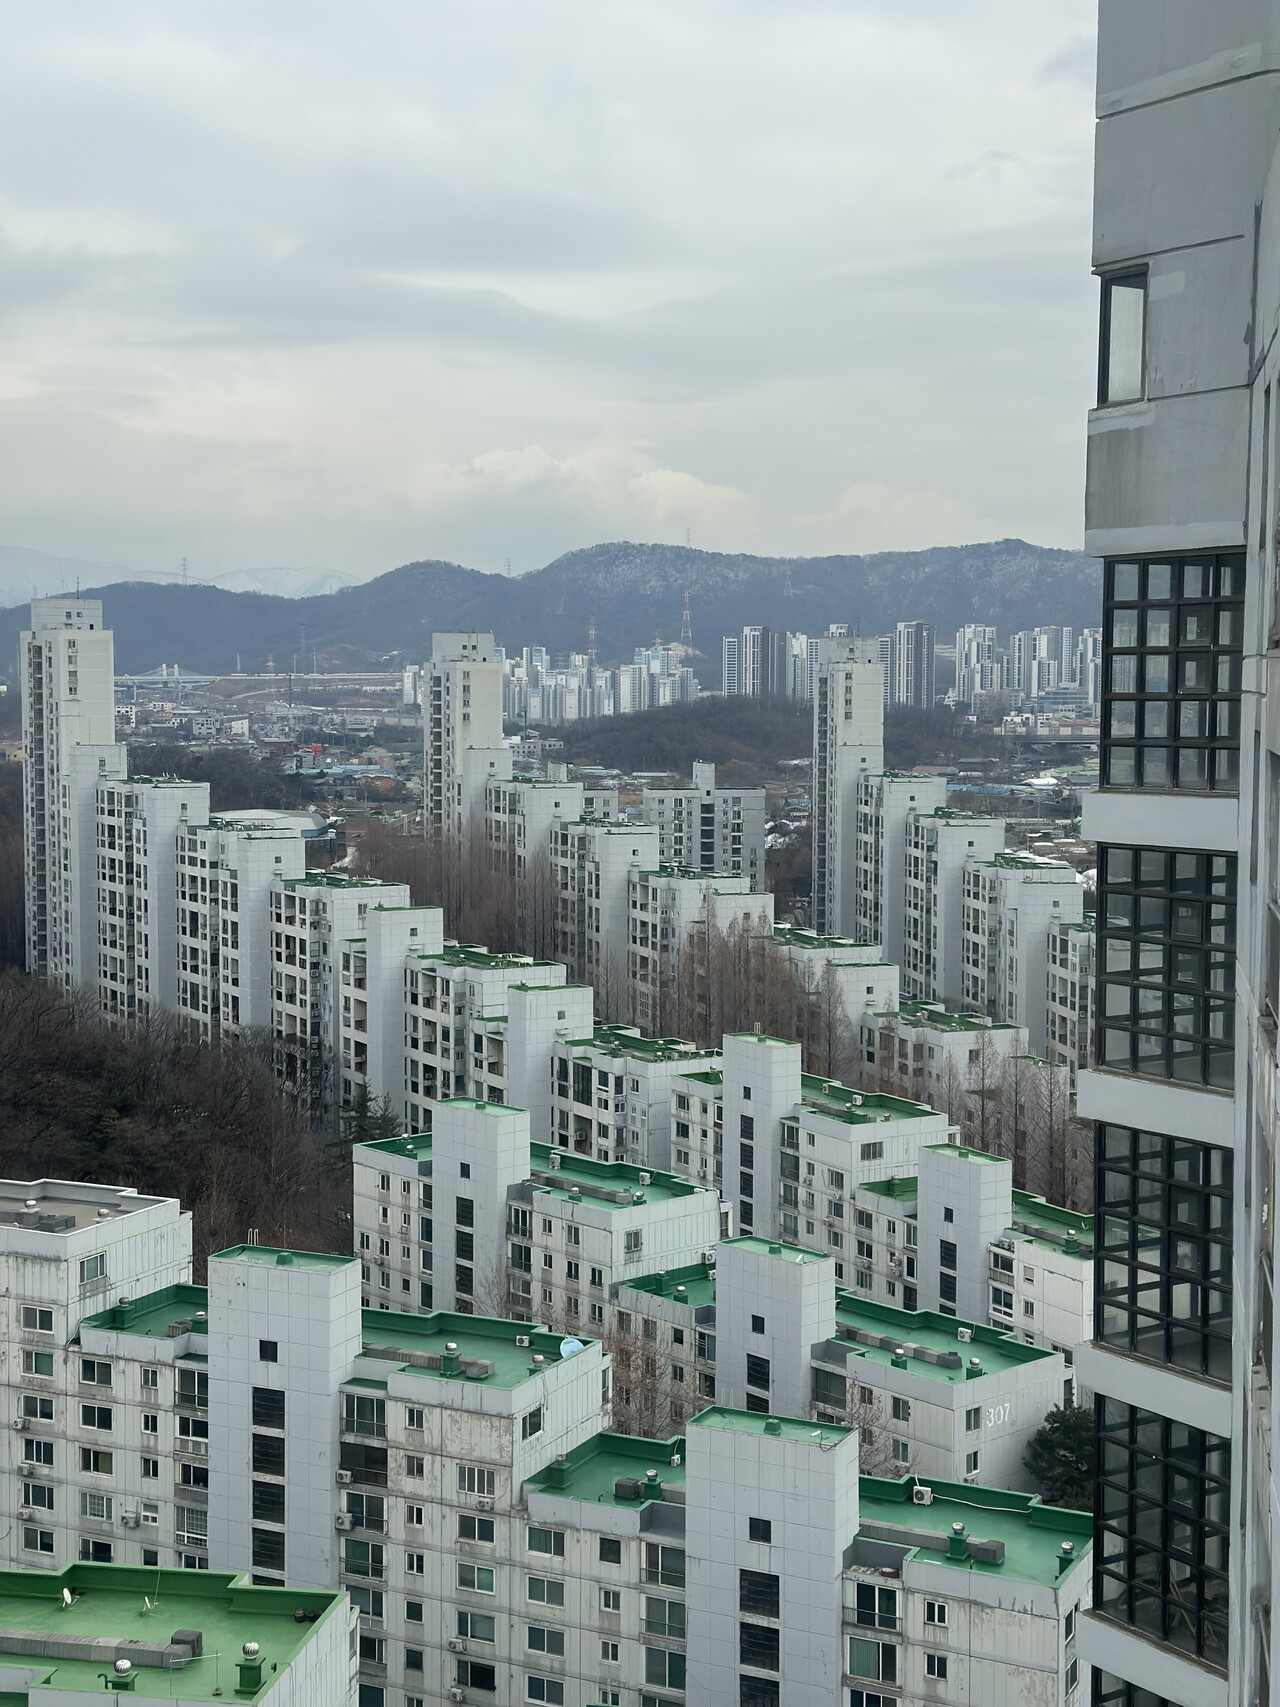 올림픽아파트 부채꼴 배치 풍경. ©서울수집